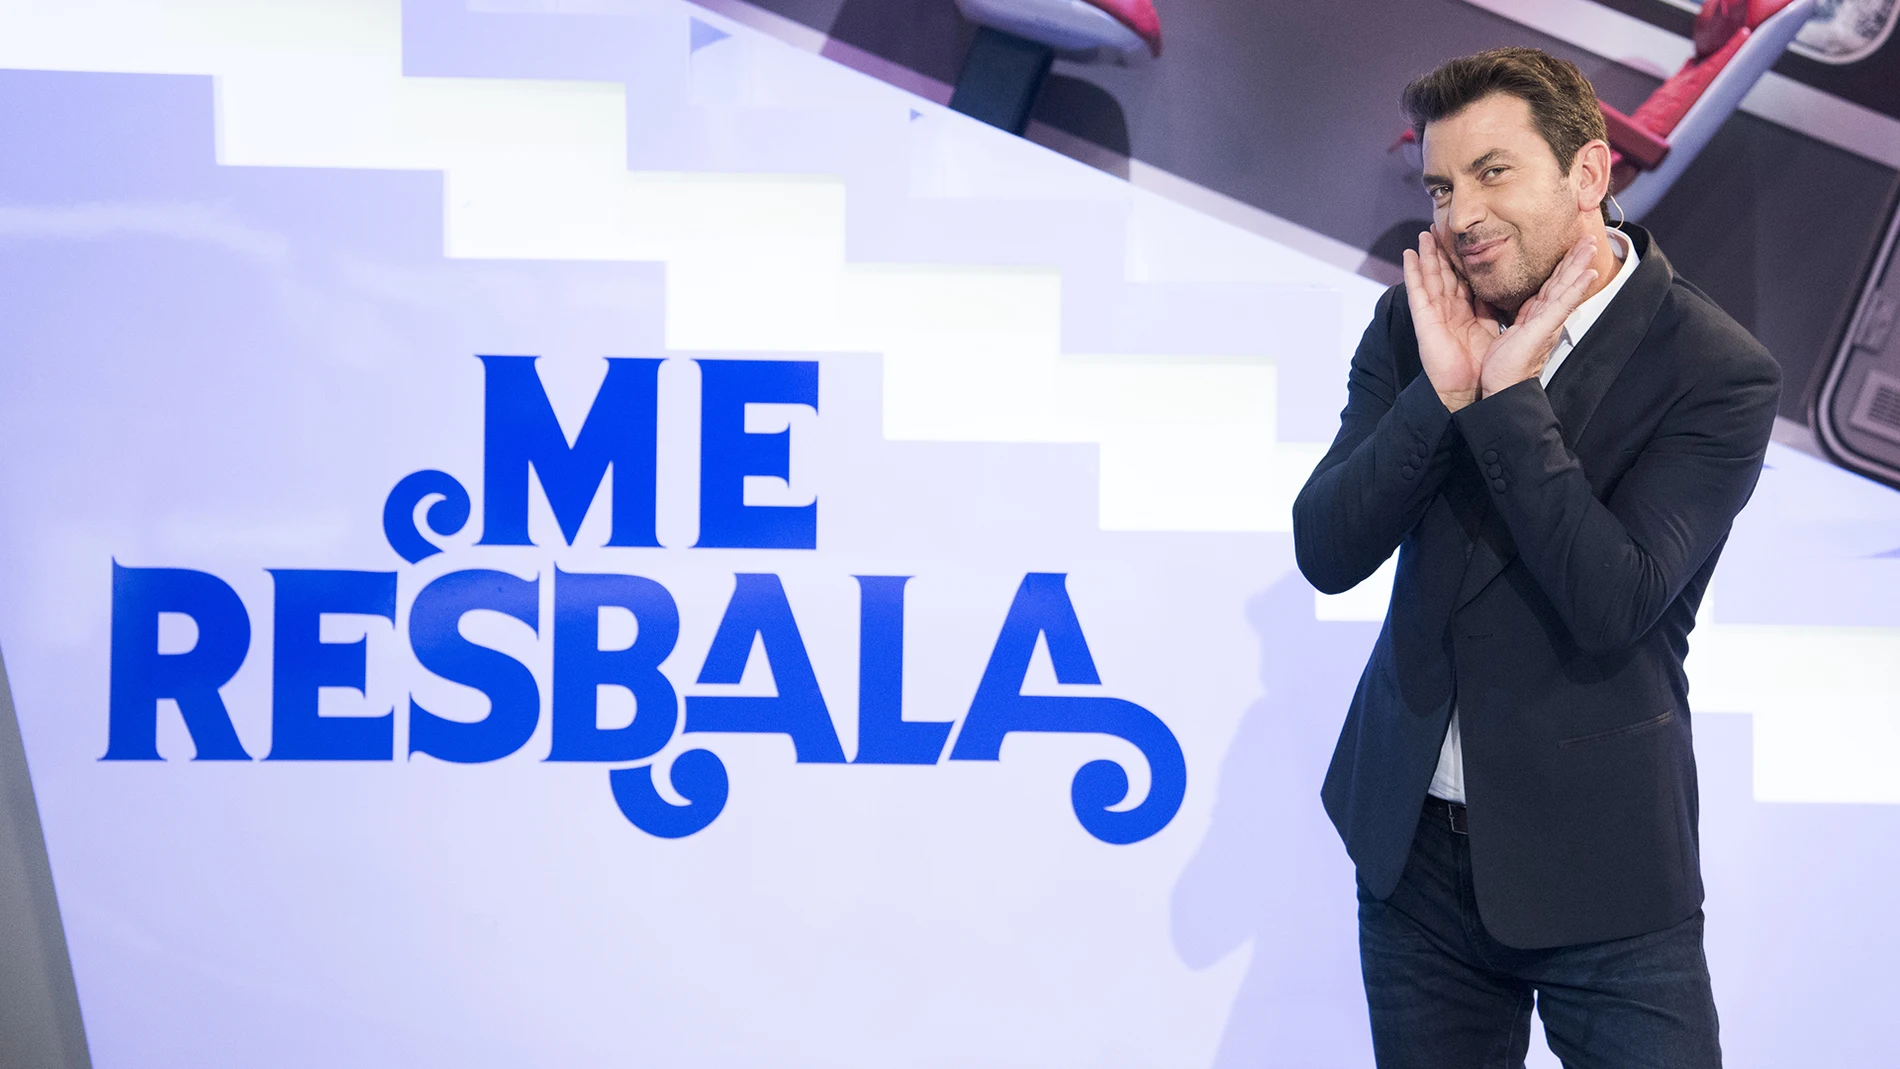 El lunes, estreno de la nueva temporada de 'Me resbala', en Antena 3